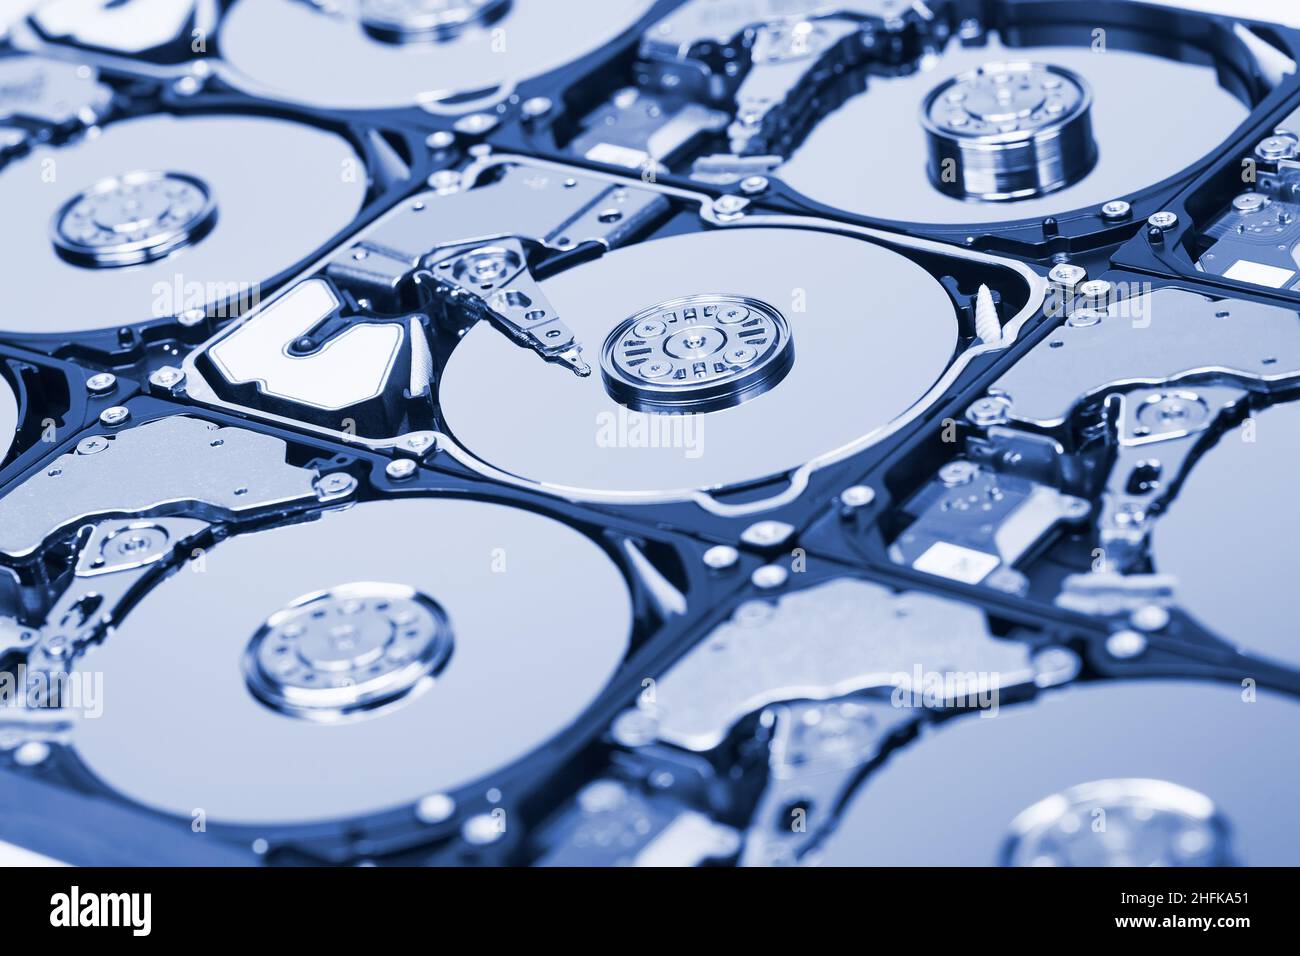 Un ensemble de disques durs avec couvercles ouverts, teintés en bleu.Concept de stockage des données Banque D'Images